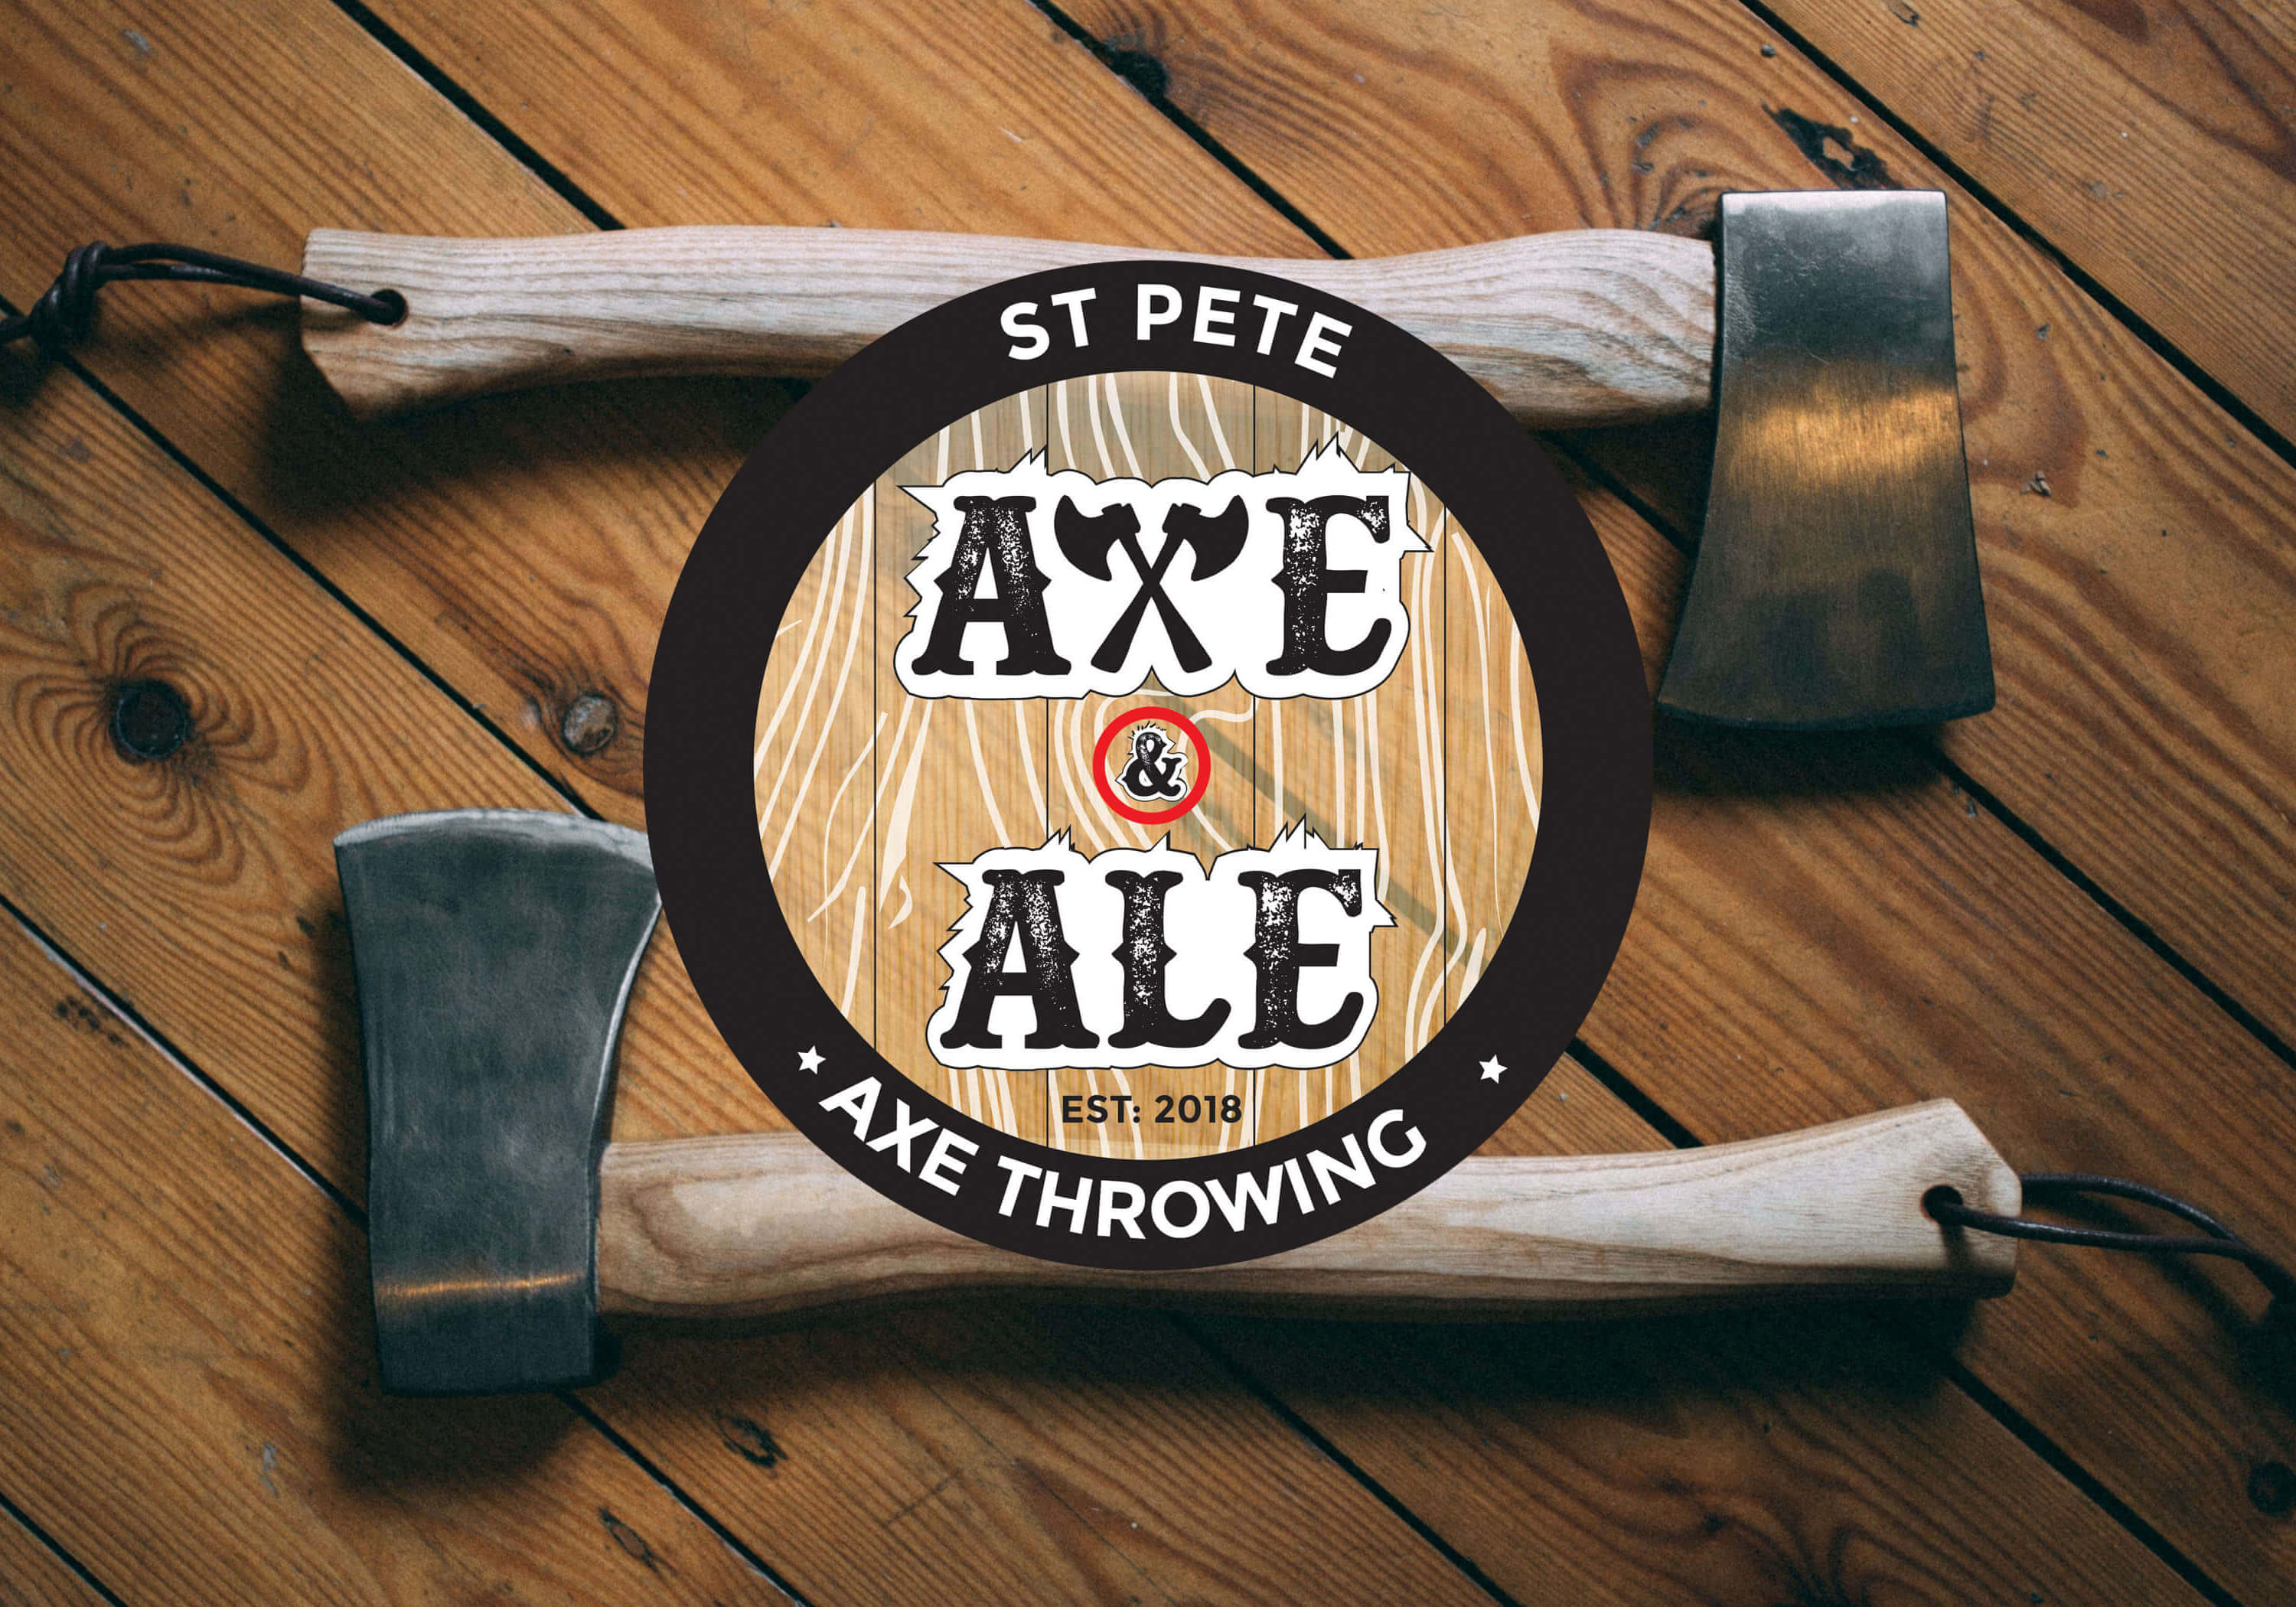 St. Pete Axe & Ale Axe Throwing